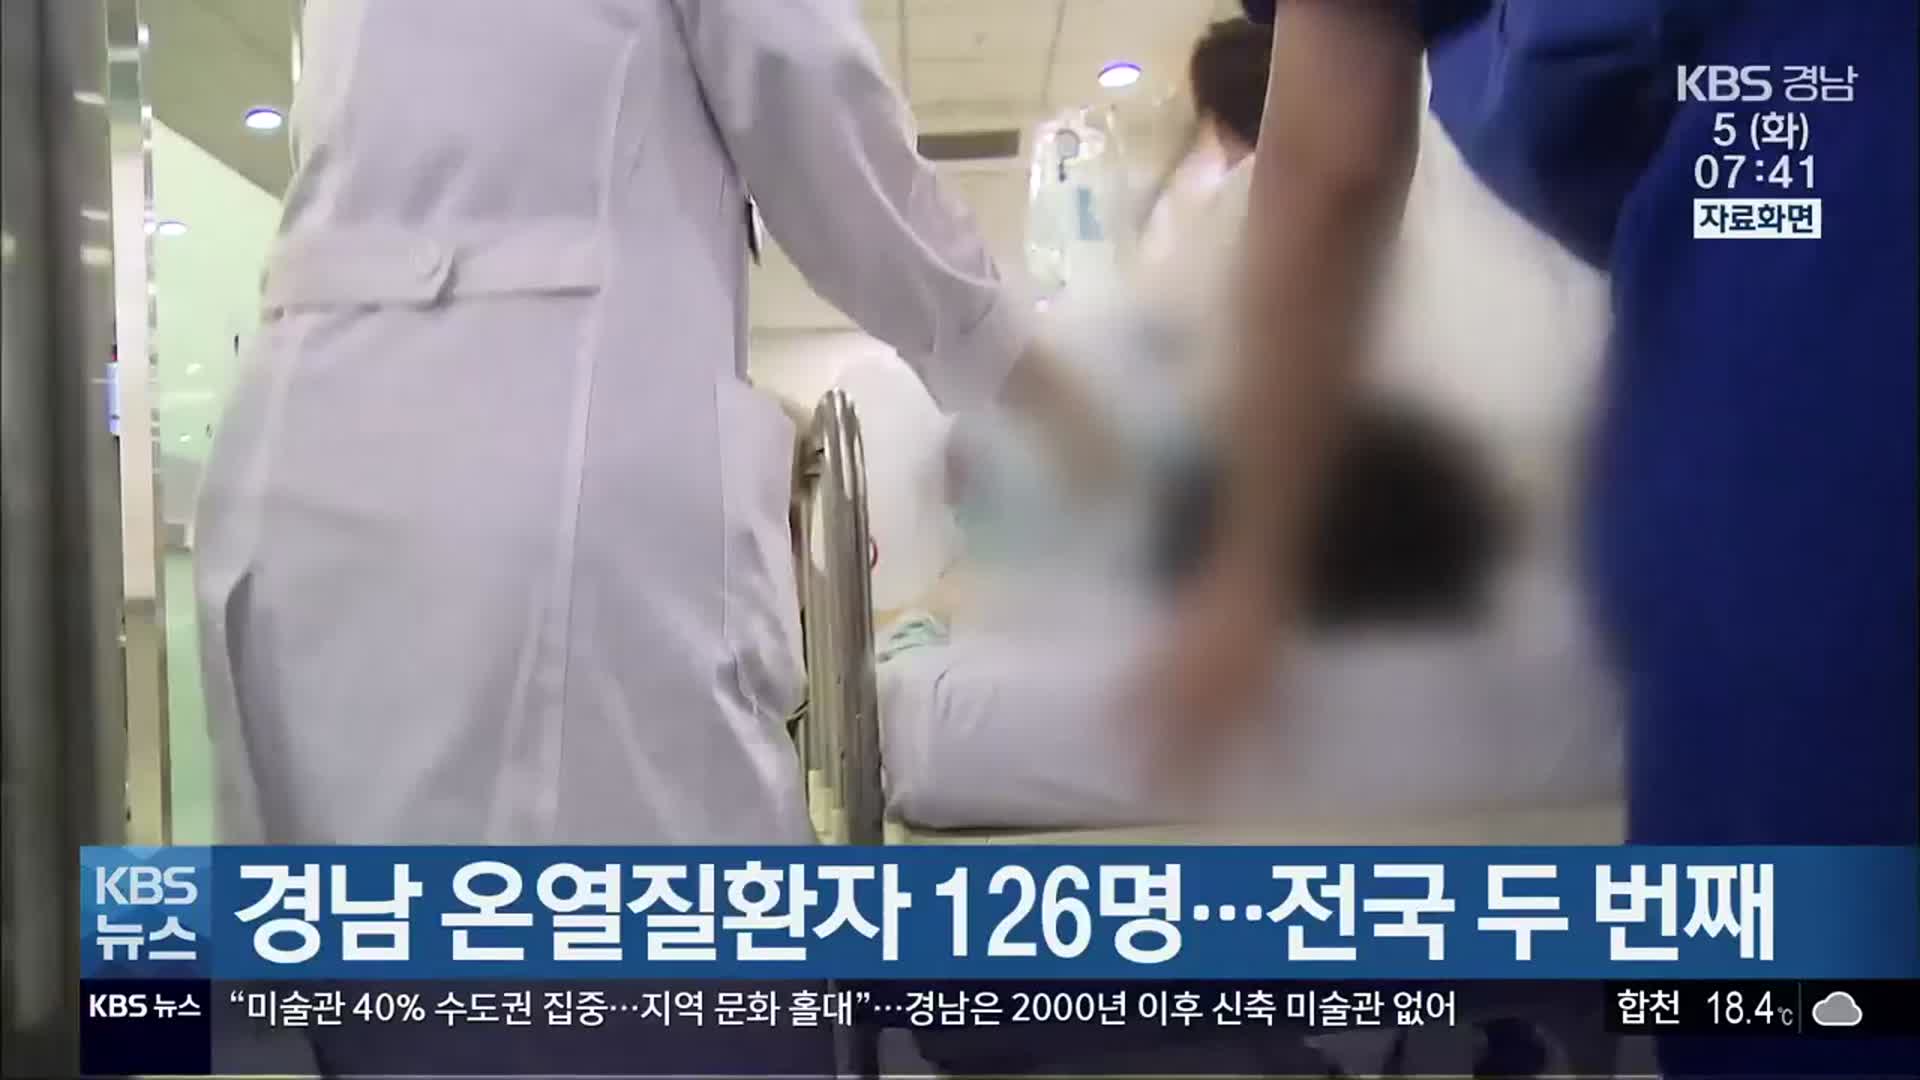 경남 온열질환자 126명…전국 두 번째